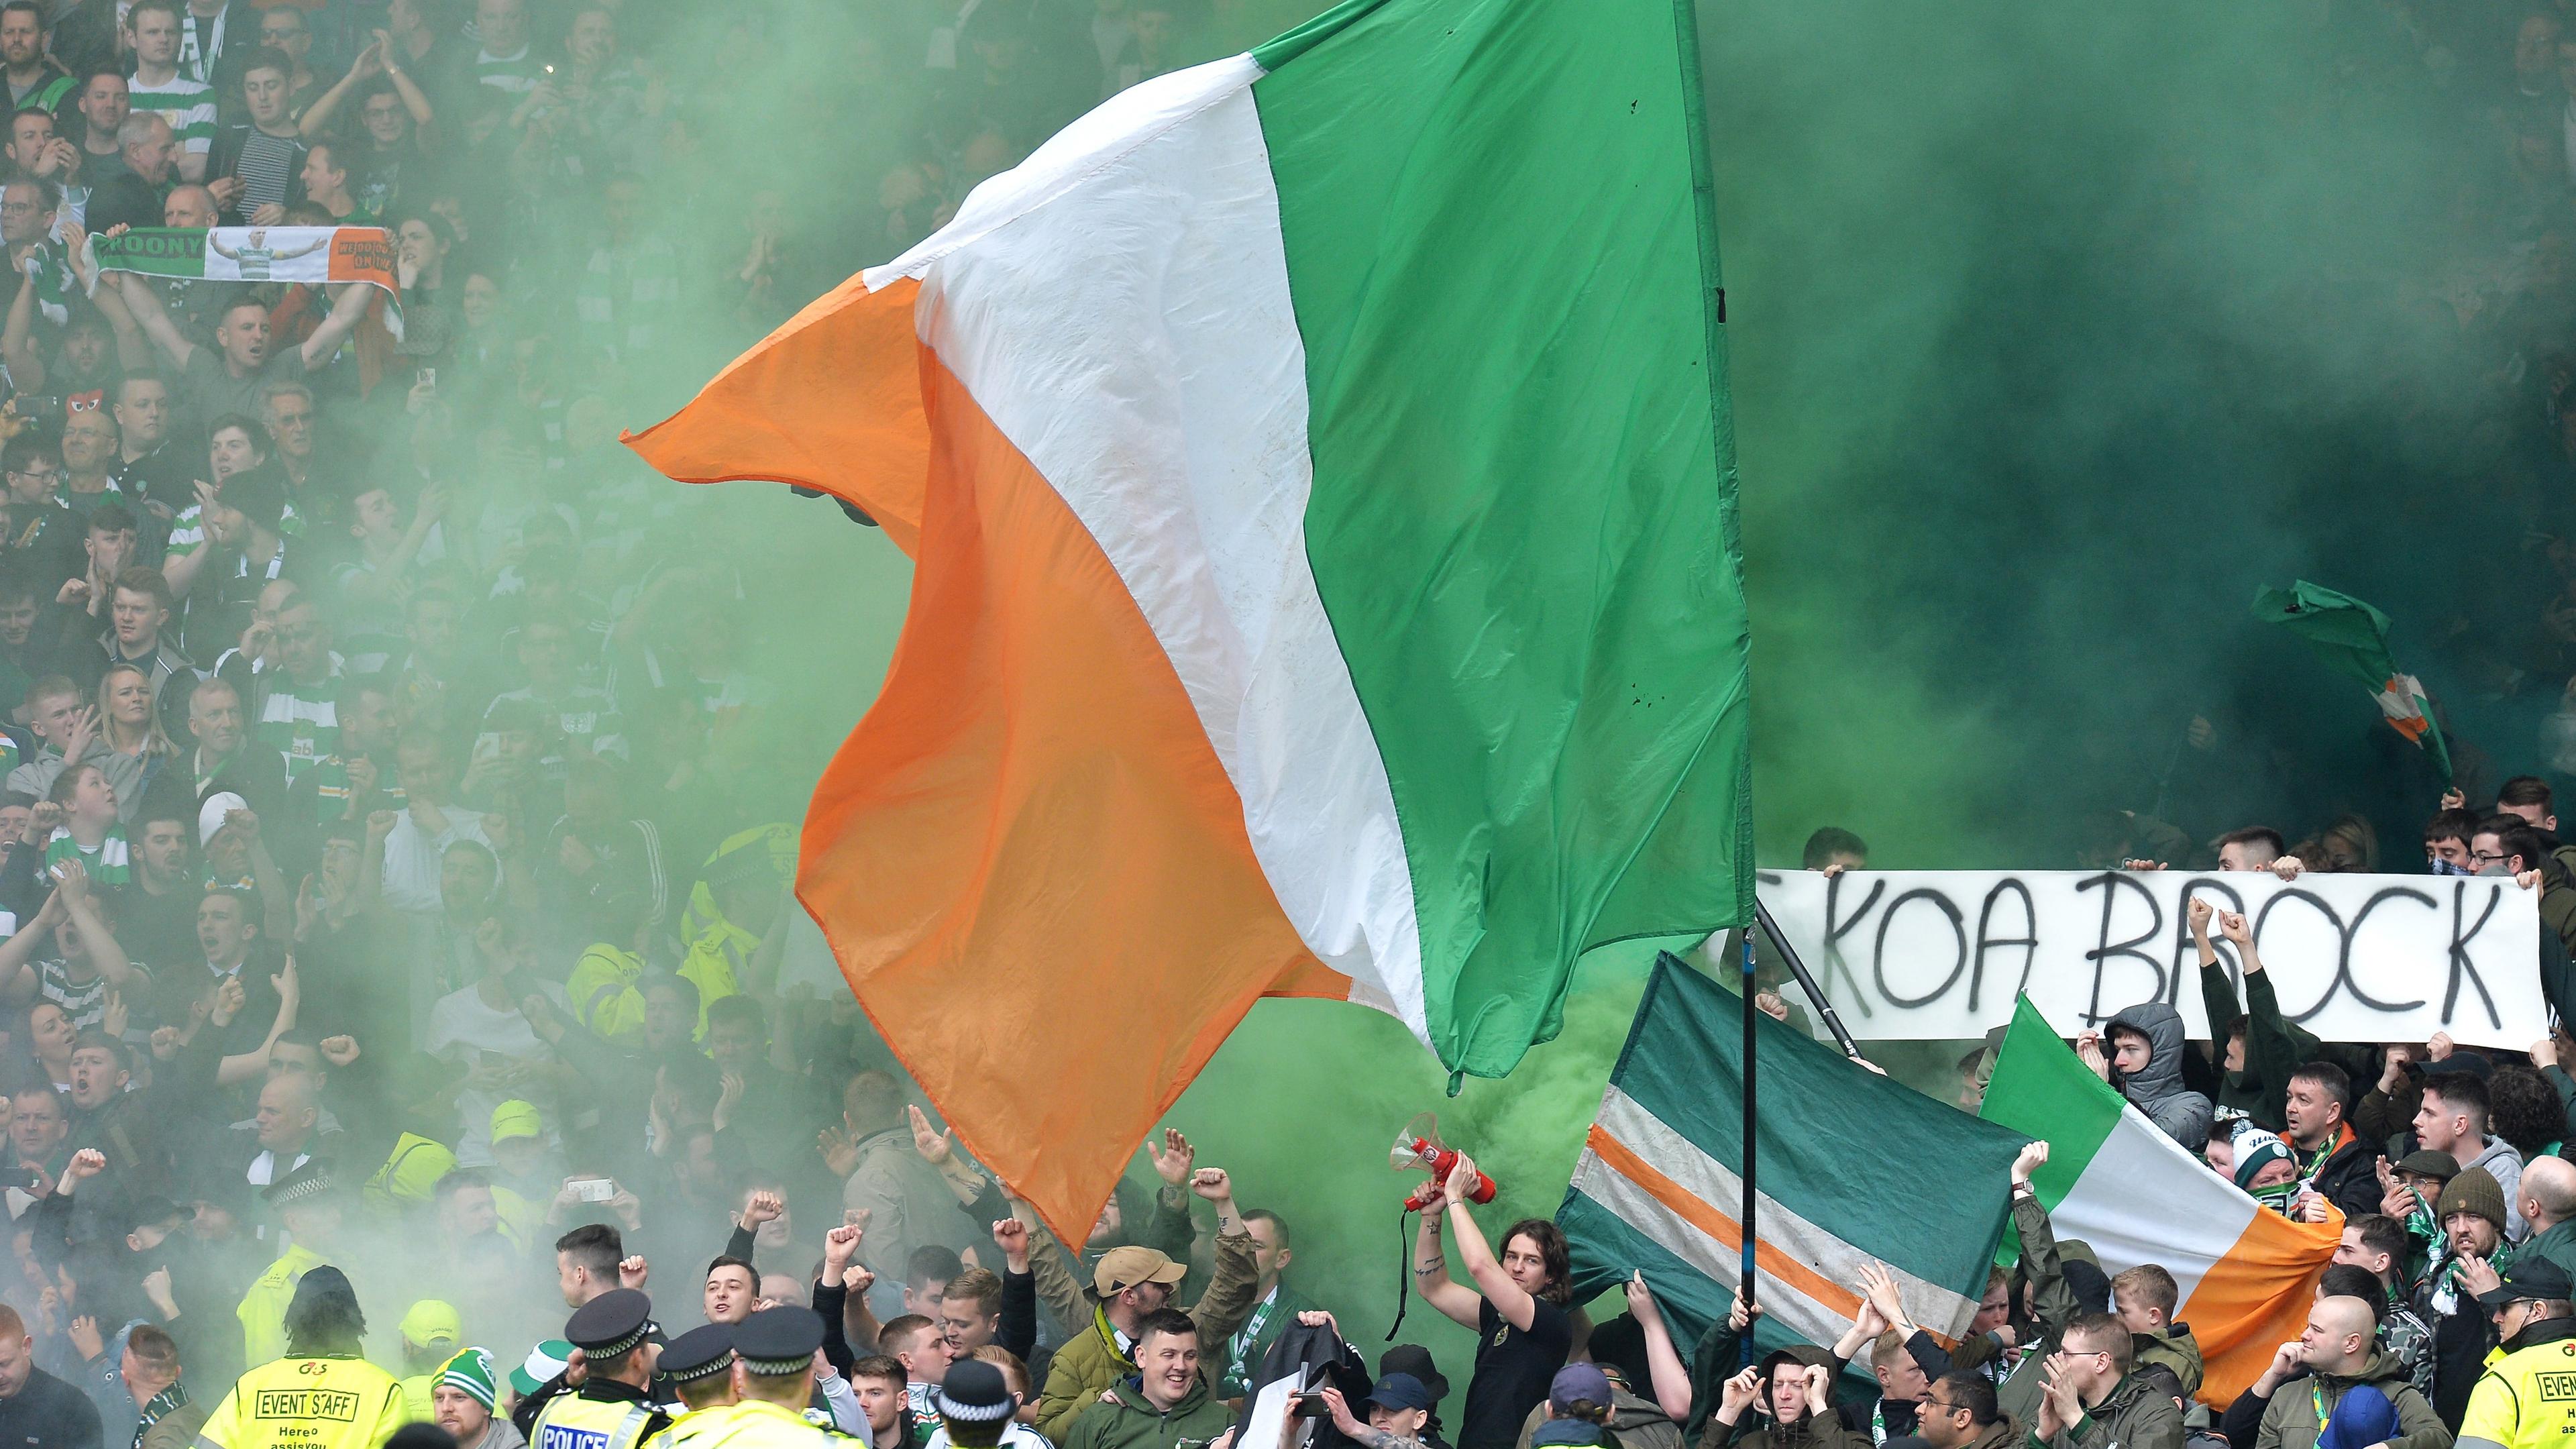 Ett av de hetaste fotbollsmötena i världen, Celtic-Rangers. ”Old Firm” är en klassiker. I helgen möts de båda och detta strax efter att en ny lag antagits. Foto: Mark Runnacle/Getty Images